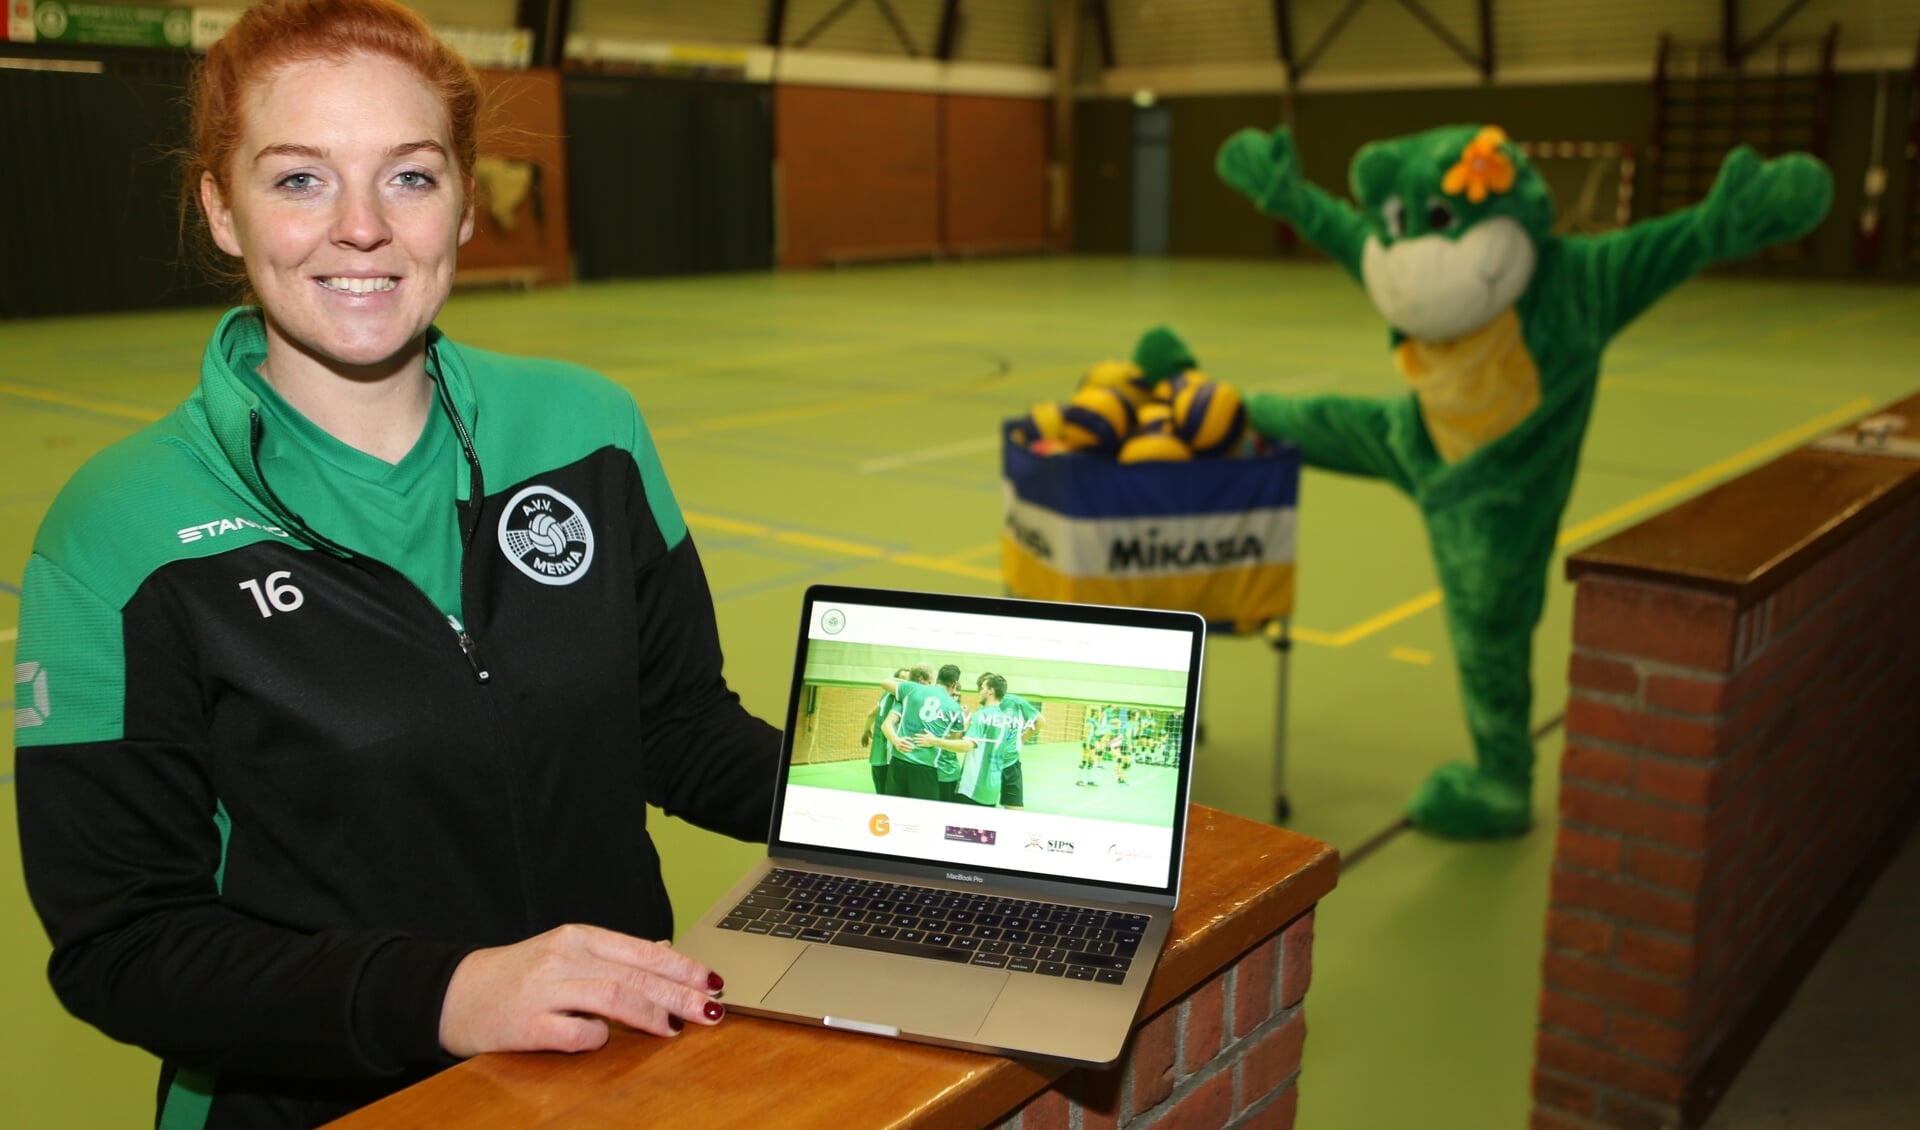 Sanne Vogel toont de door haar gemaakte nieuwe website van Merna. Op de achtergrond de clubmascotte van de Leenster vereniging. Foto: Ronnie Afman